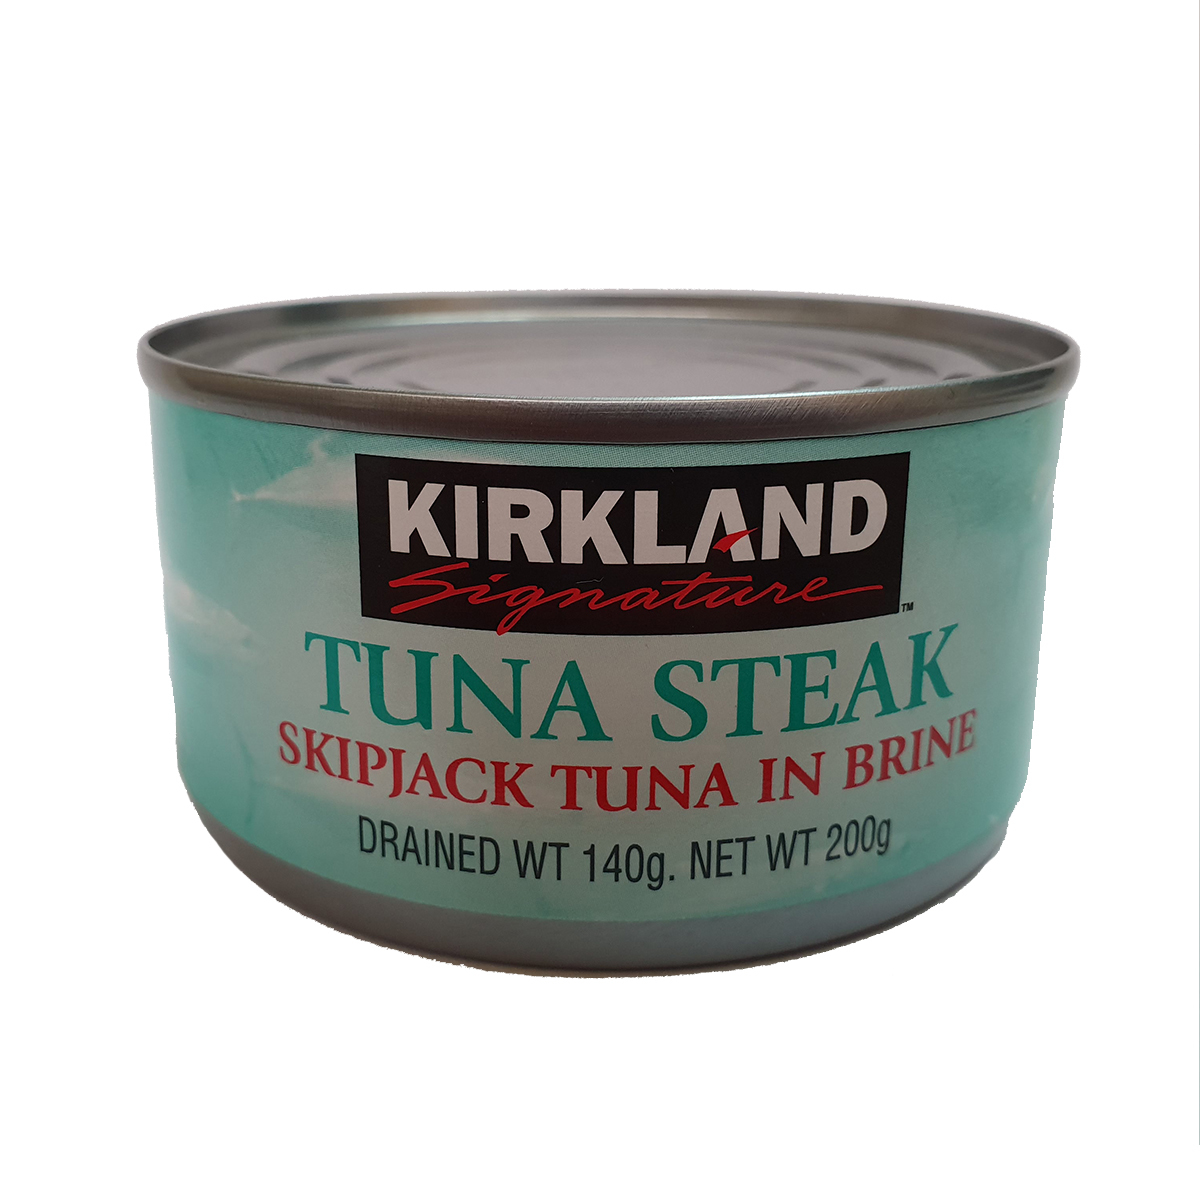 Kirkland Signature Tuna Steak Brine